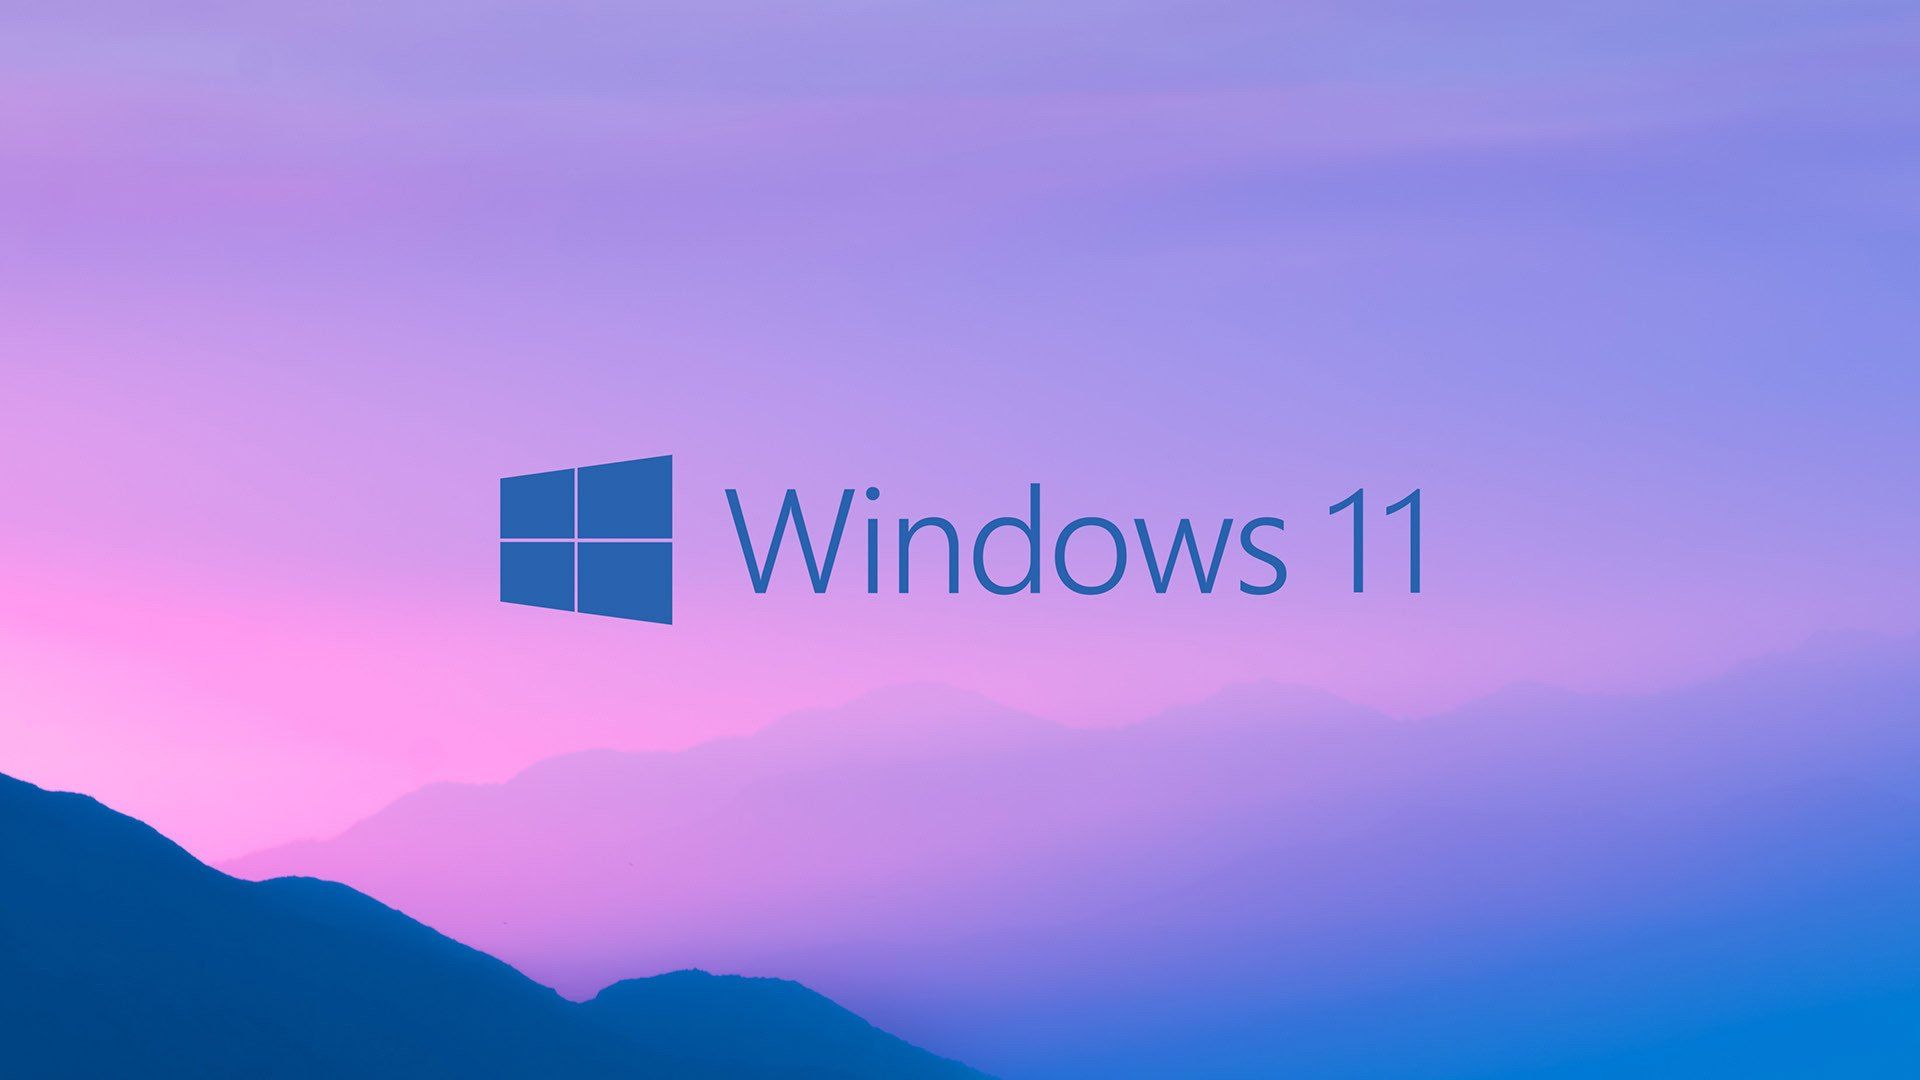 Windows 11 Wallpapers - Top 25 Best Windows 11 Backgrounds Download